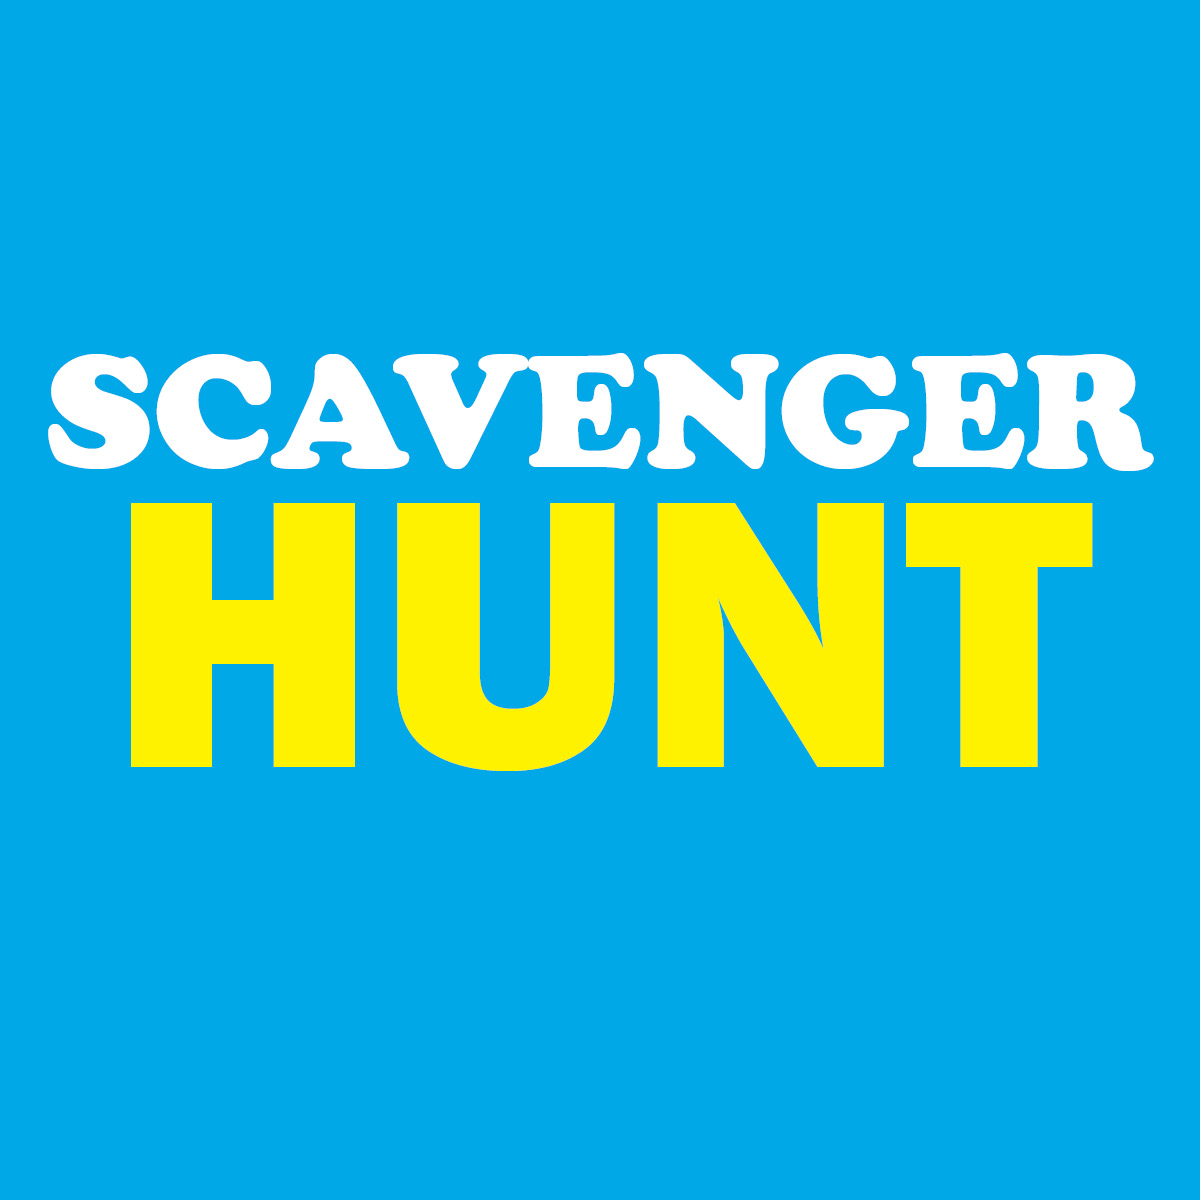 Scavenger Hunt logo